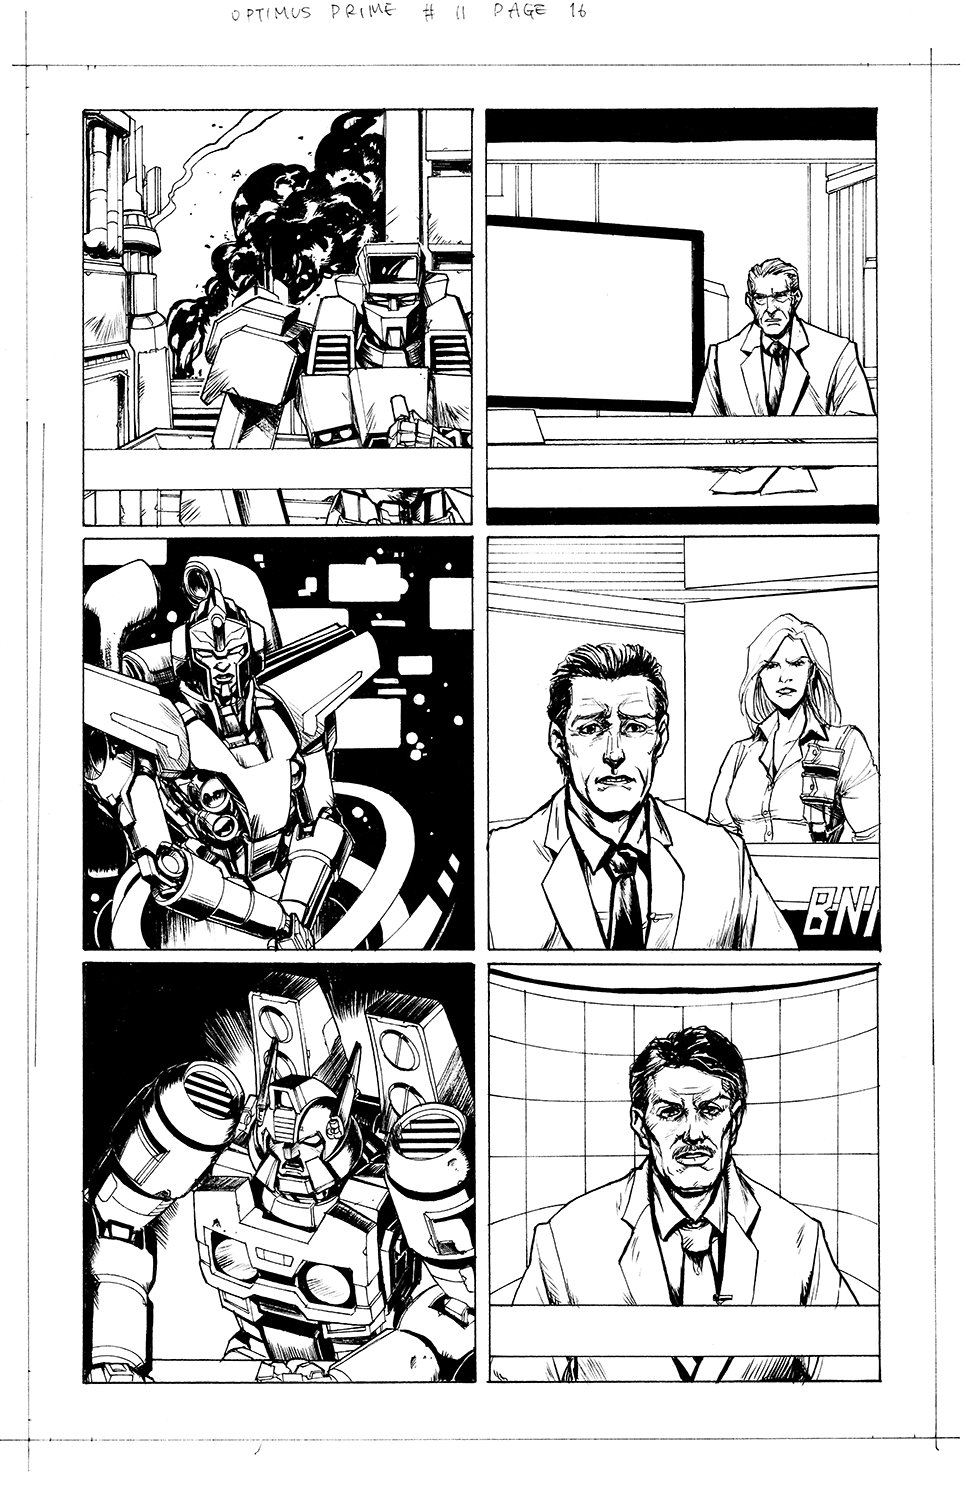 Optimus Prime #11 Page 16